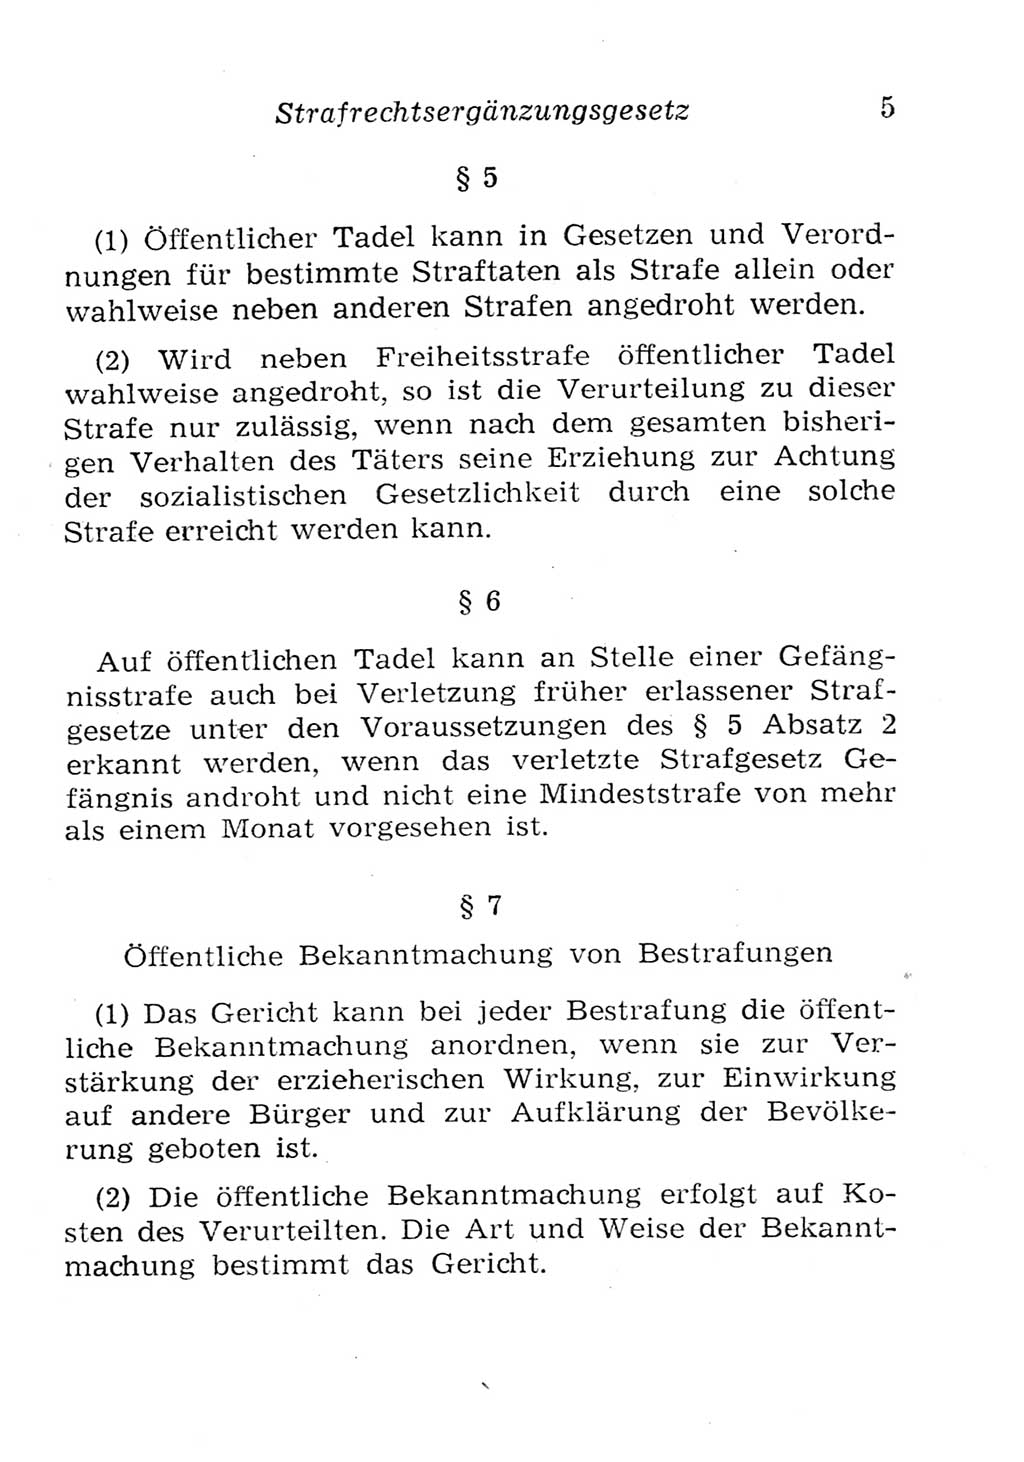 Strafgesetzbuch (StGB) und andere Strafgesetze [Deutsche Demokratische Republik (DDR)] 1957, Seite 5 (StGB Strafges. DDR 1957, S. 5)